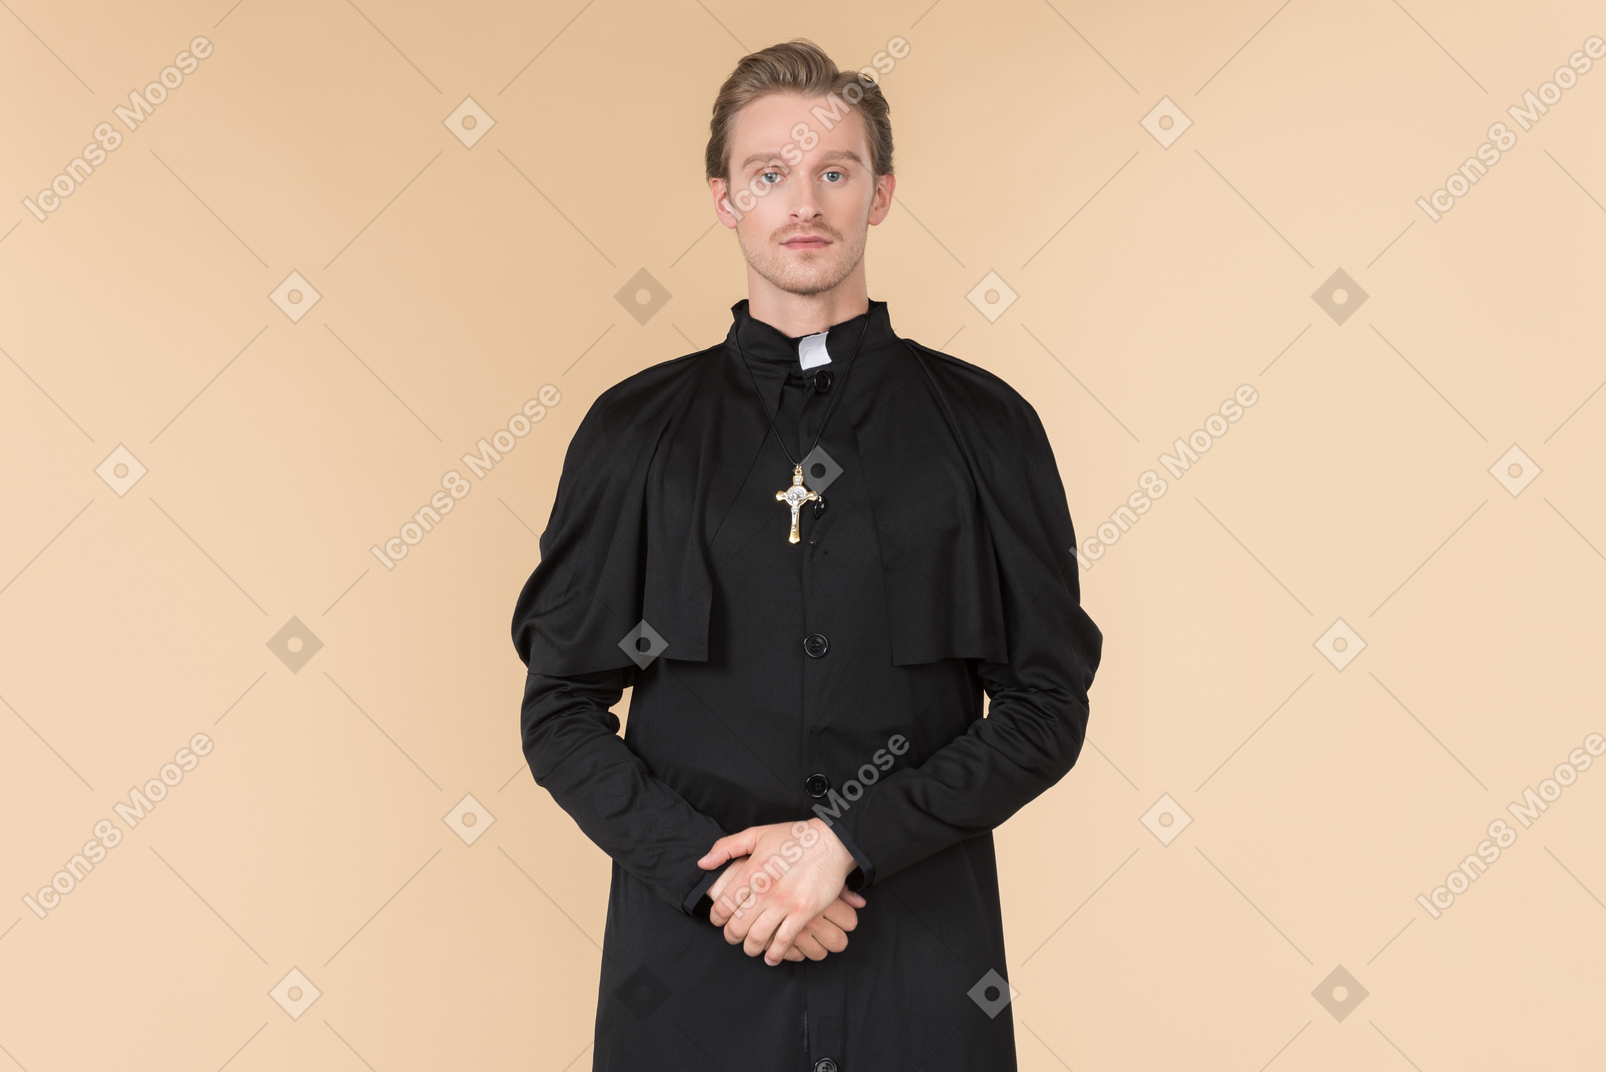 접힌 손으로 서있는 가톨릭 신부